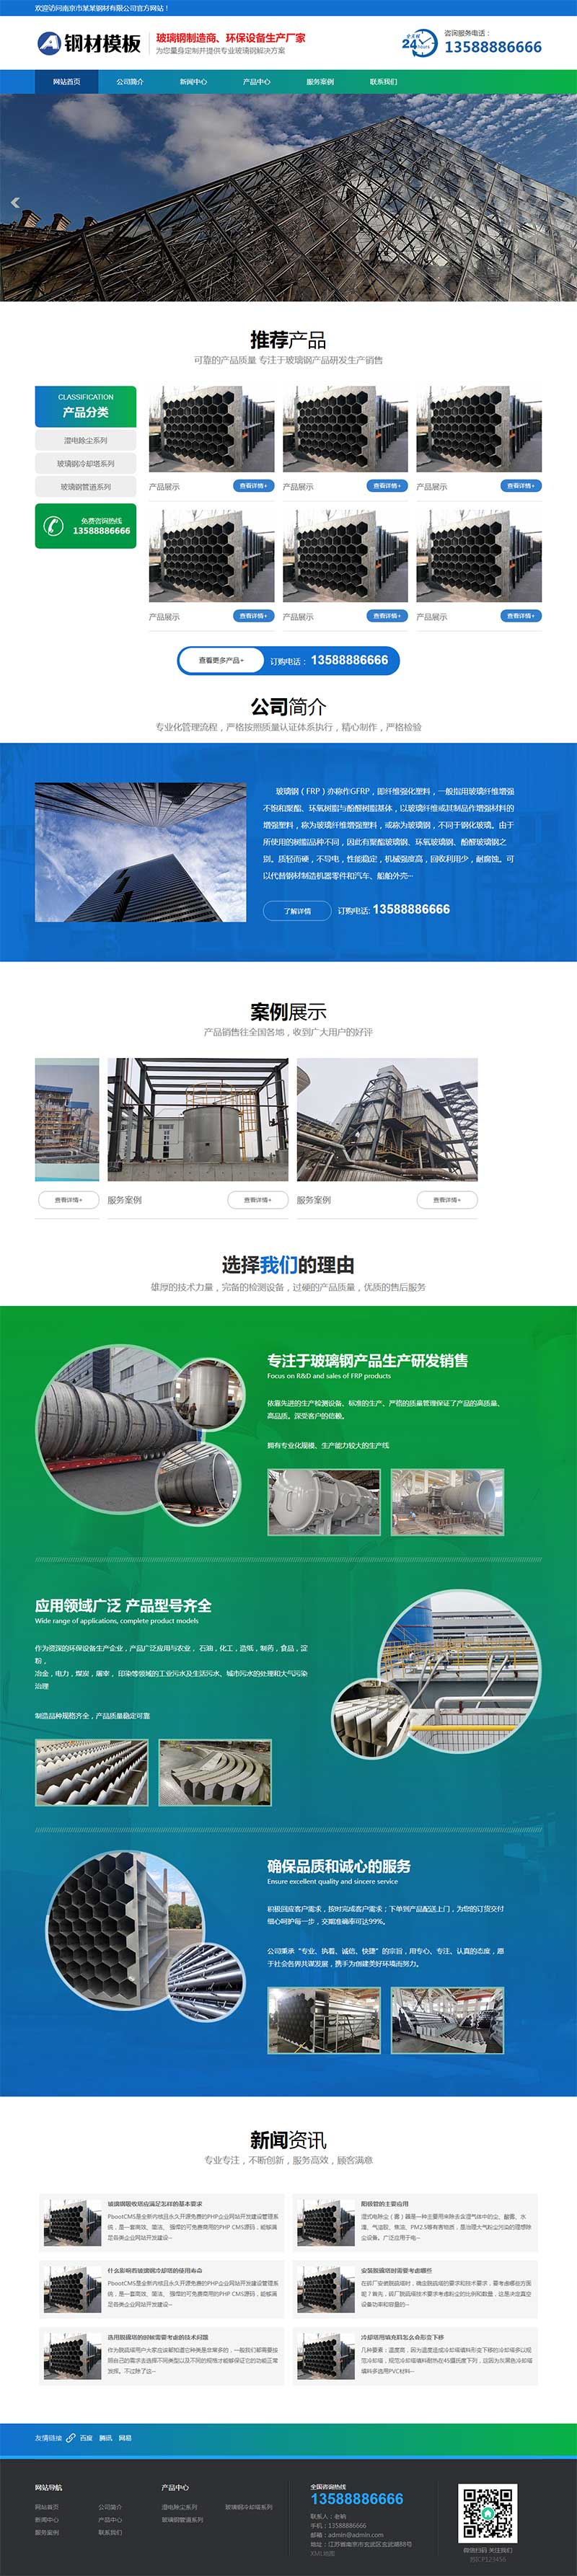 玻璃钢环保设备类不锈钢钢材网站模板(PC+WAP)-1